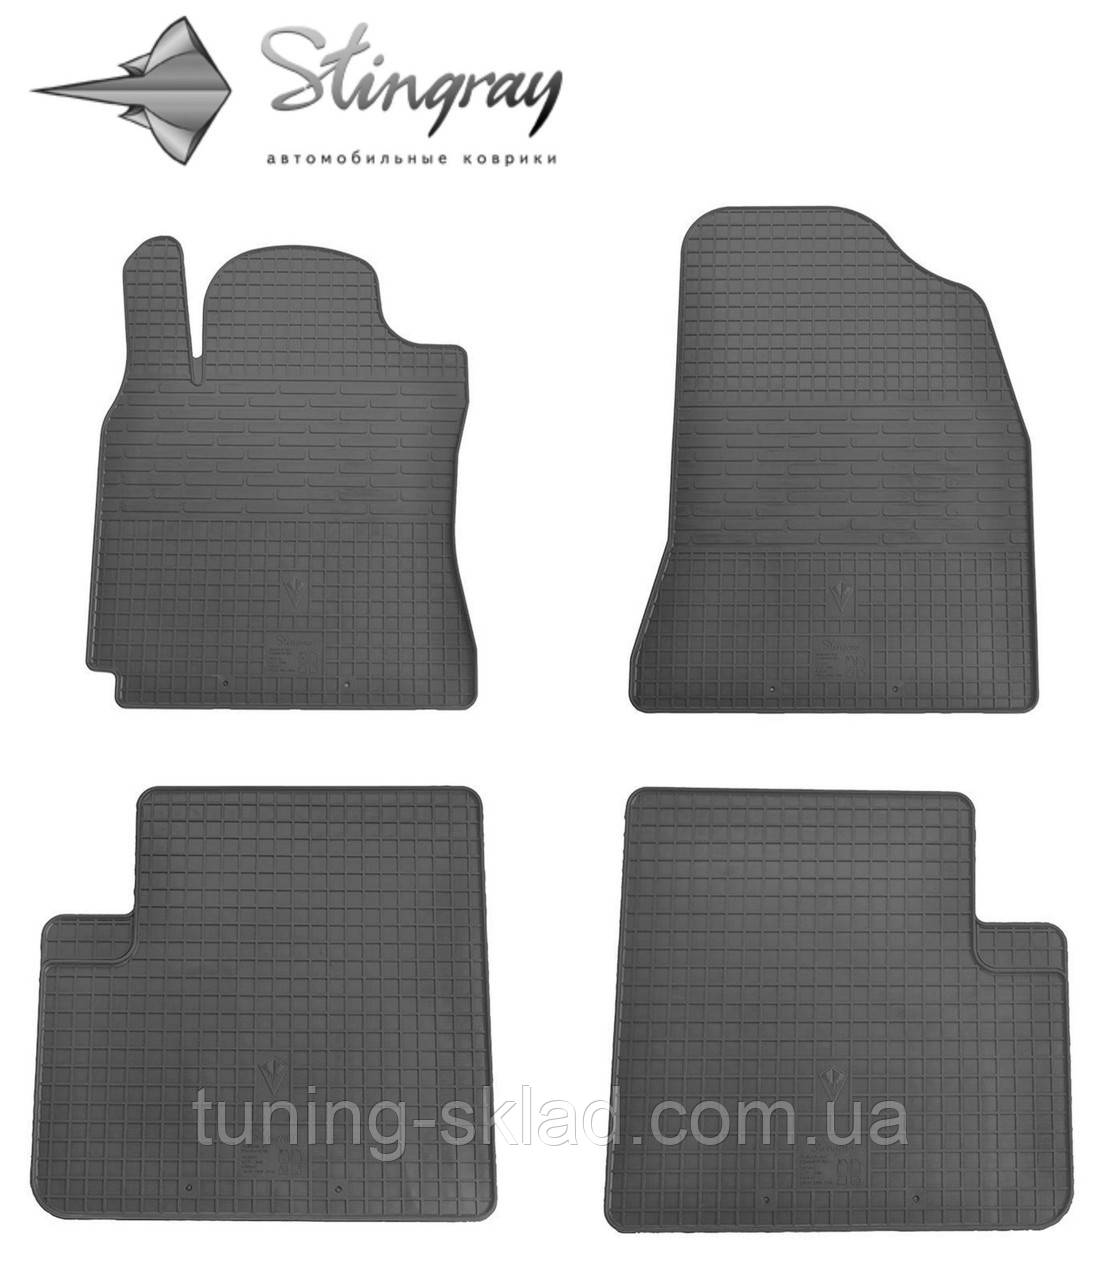 Гумові килимки Chery Tiggo T11 2006-2014 (Черрі Тігго) кількість 4 штуки